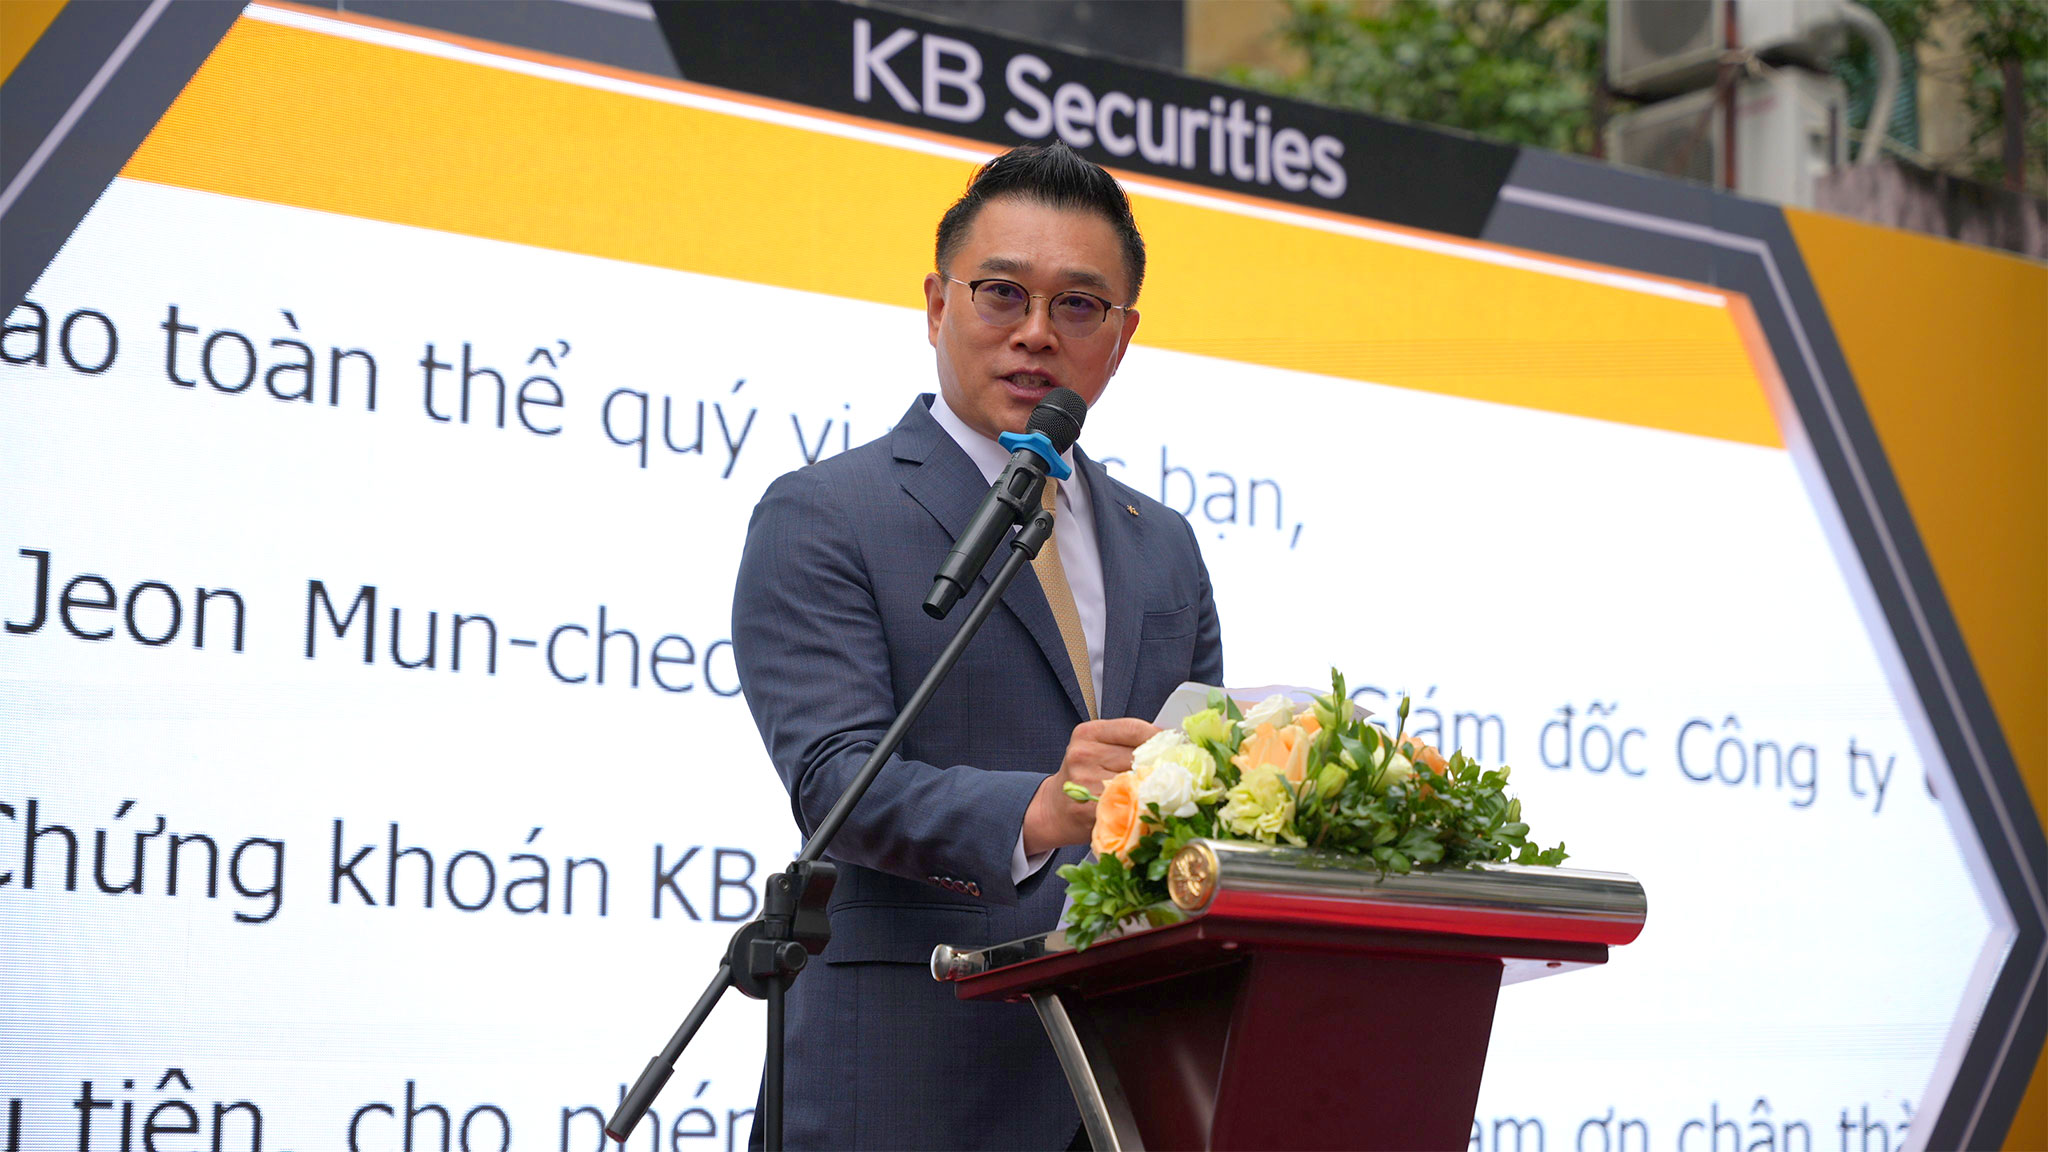 Chứng khoán KB Việt Nam chính thức ra mắt Ứng dụng Đầu tư Chứng khoán KB Buddy dành cho Nhà đầu tư mới